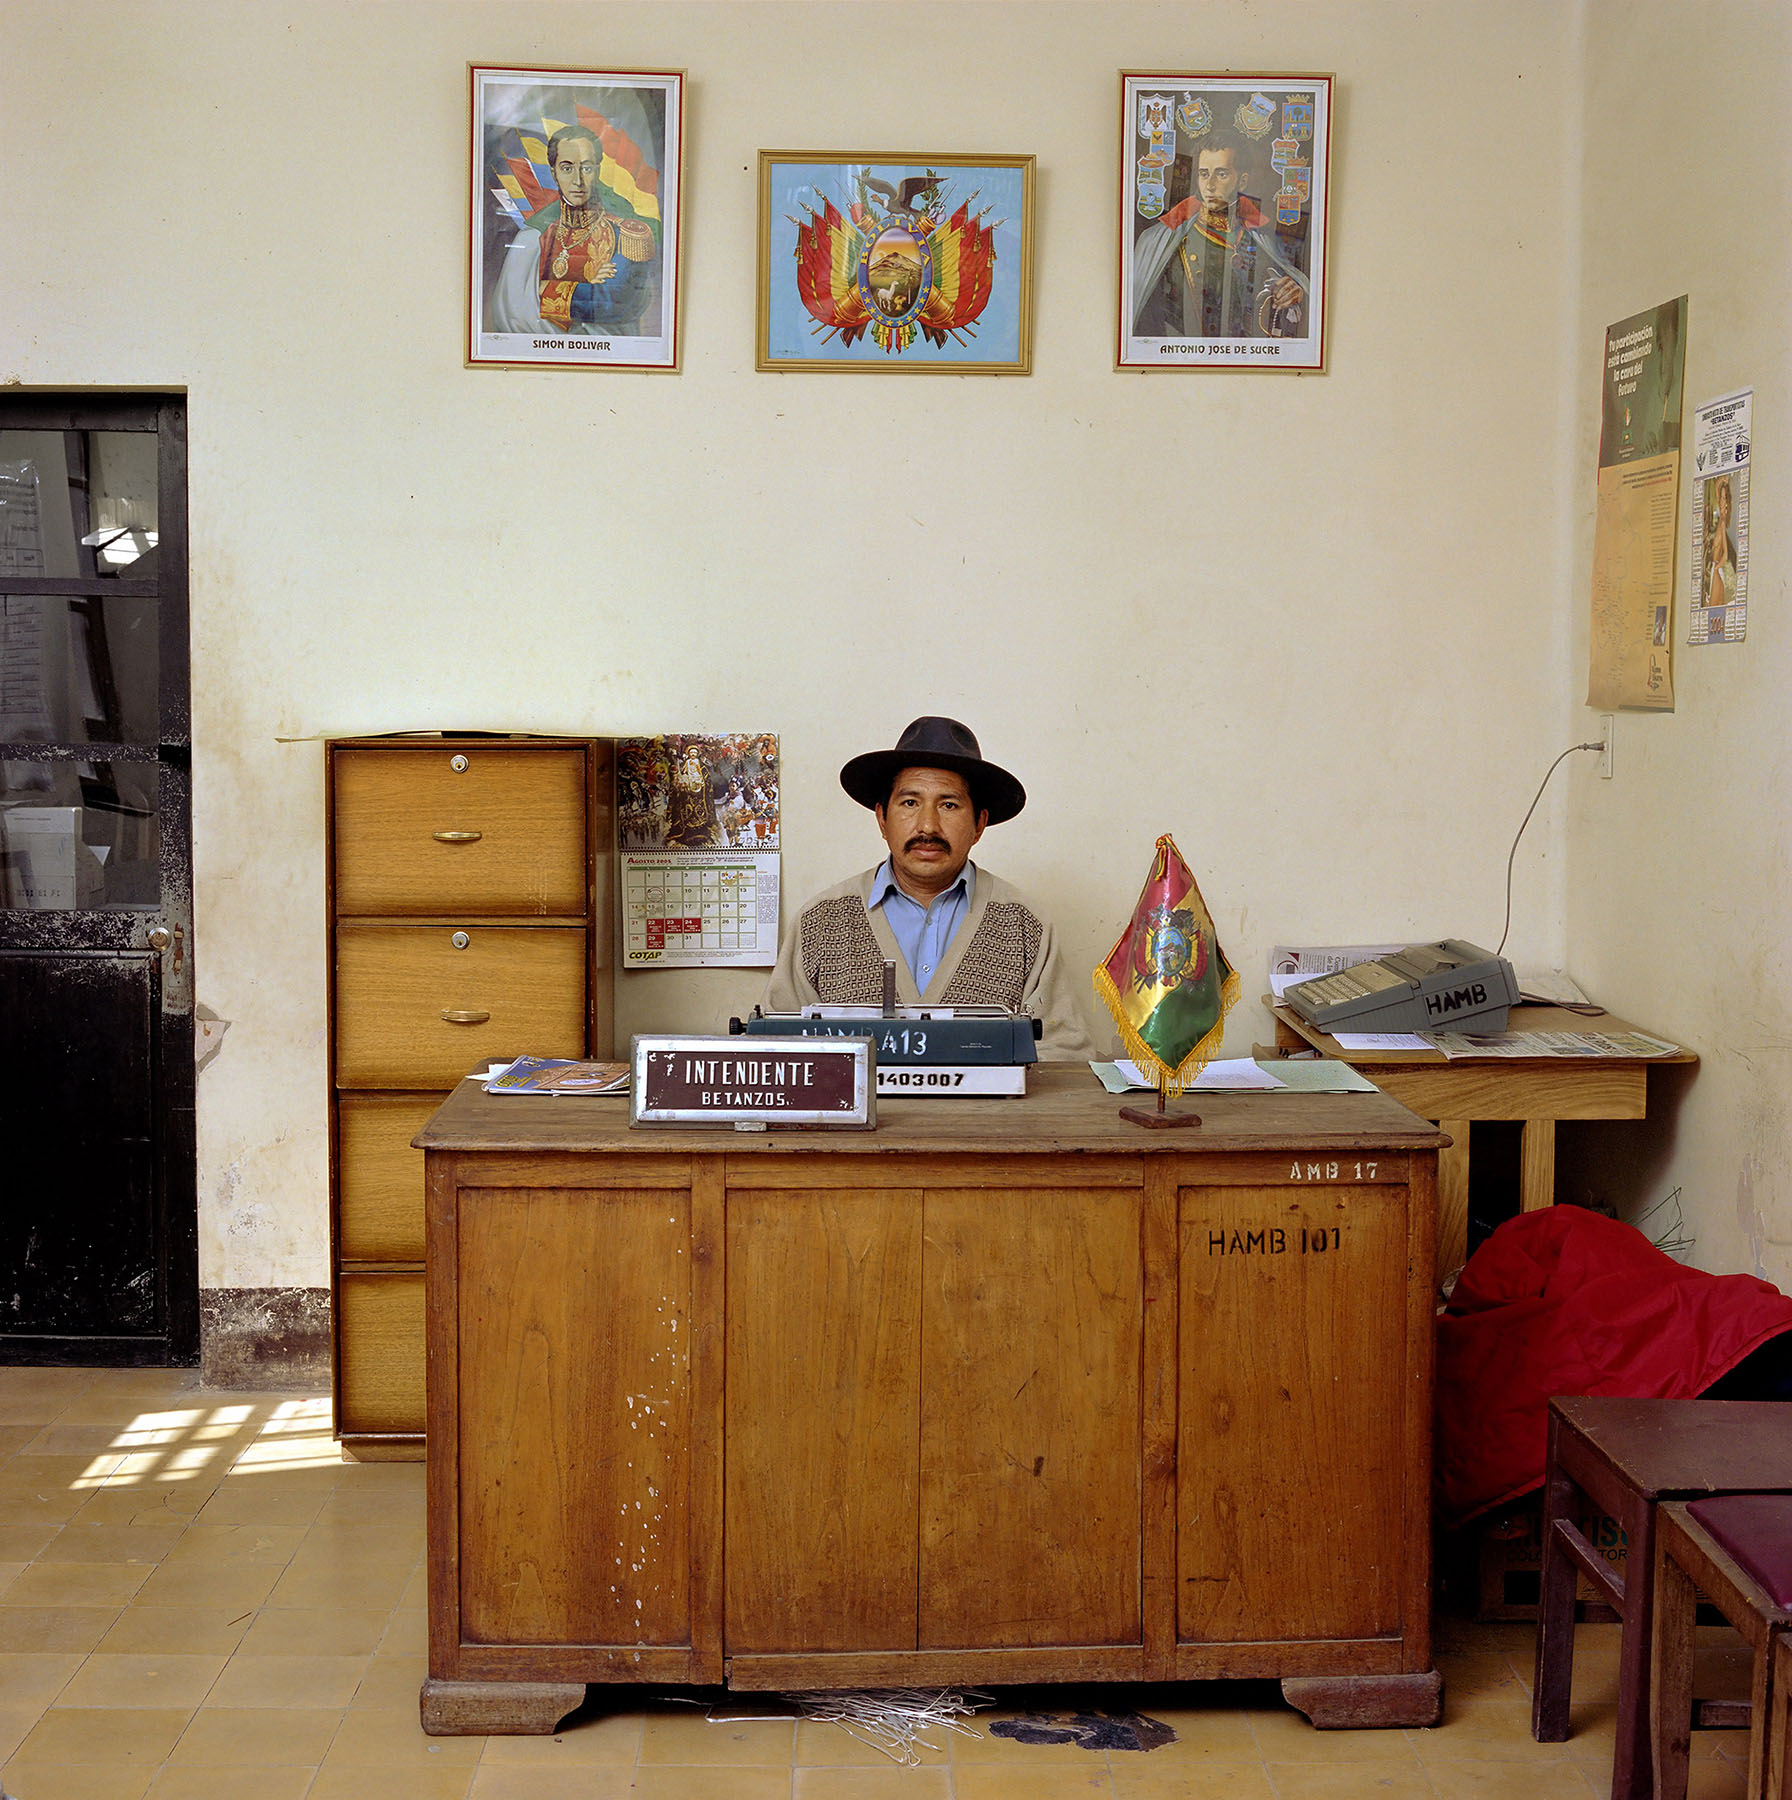 Bolivia, bureaucracy, (c) Jan Banning, 2005.
Bolivia, bureaucratie, departement Potosi.

Bolivia-13/2005 [Bet.,REV (b. 1958)]
Rodolfo Villca Flores (b. 1958) is chief supervisor of market and sanitary services of the municipality of Betanzos, Cornelio Saavedra province. Previously he worked as a bricklayer, electrician, plumber and handyman. Monthly salary: 1,150 bolivianos ($ 143, euro 128).

Bolivia-13/2005 [Bet.,REV (b. 1958)]
Rodolfo Villca Flores (b. 1958) is hoofdopzichter van de markt- en reinigingsdienst van de gemeente Betanzos, provincie Cornelio Saavedra. Hij heeft eerder gewerkt als metselaar, elektricien, loodgieter en klusjesman. Maandsalaris: 1150 bolivianos (euro 128, 143 $).